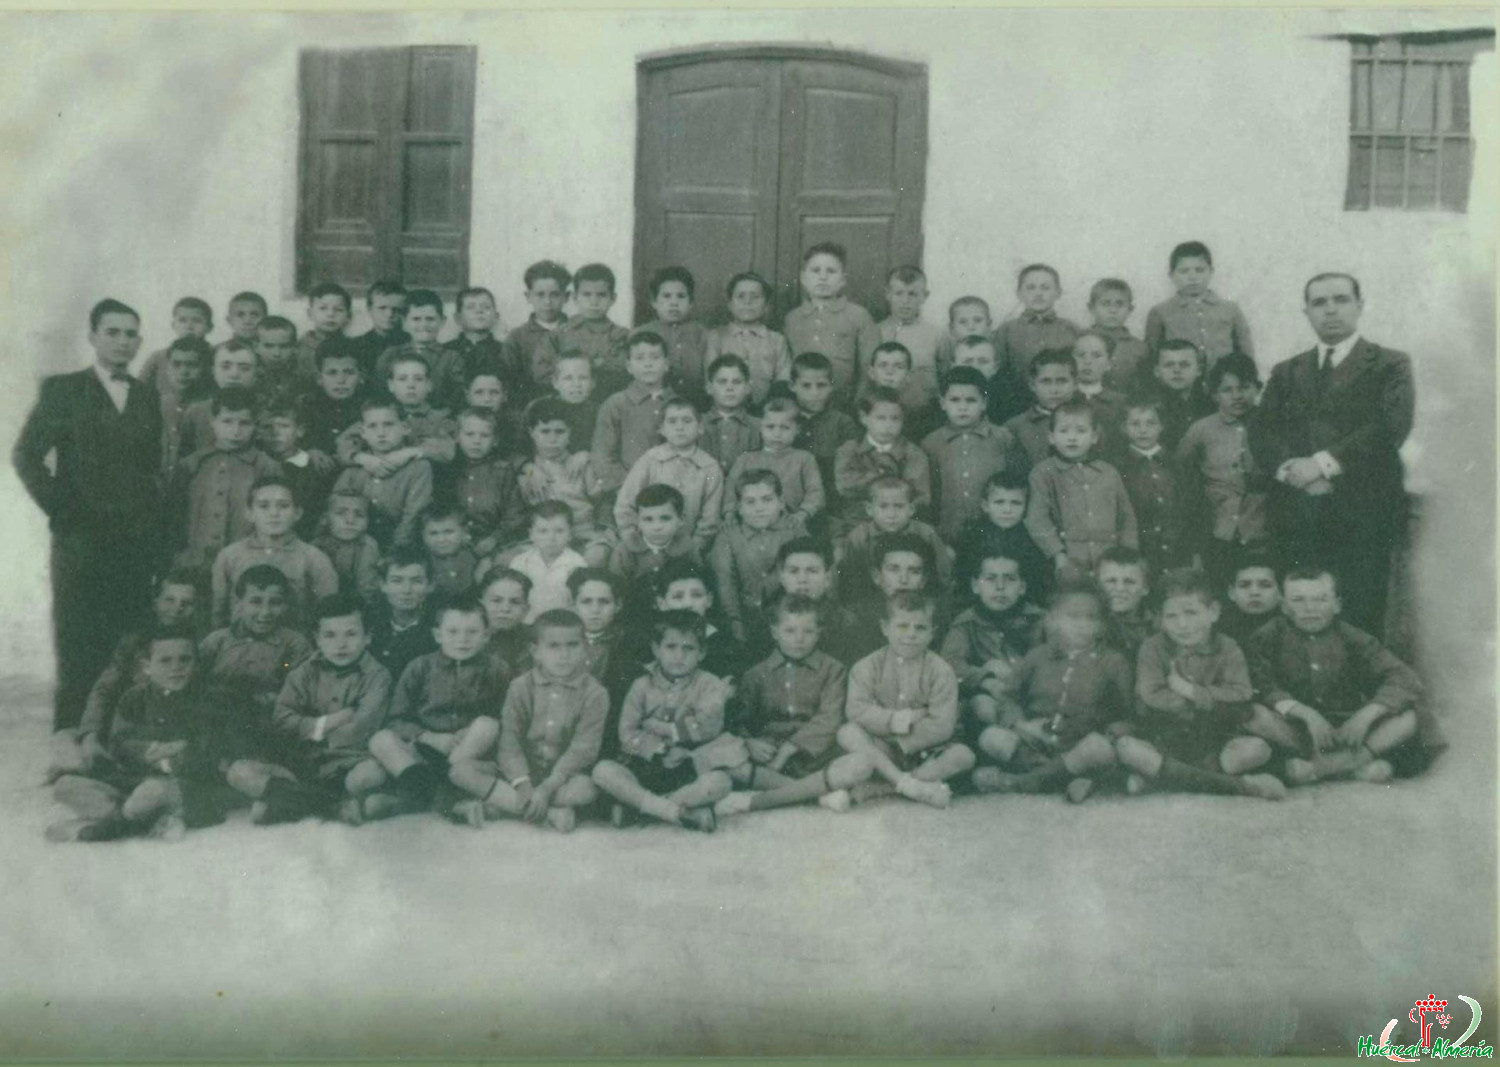 Grupo escolar. Escuela en C/ Las Palmeras. 1920